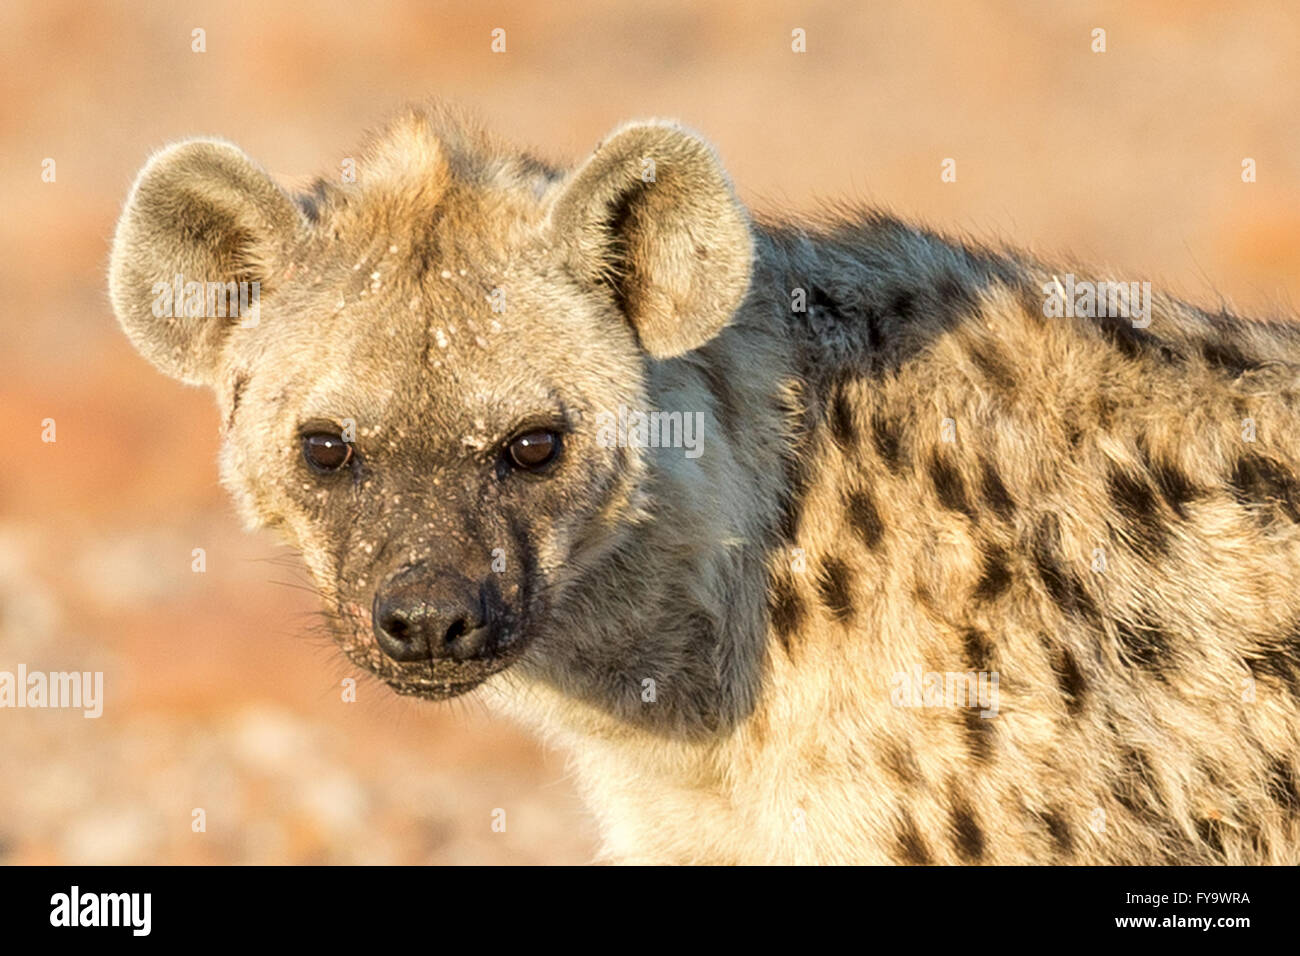 Hyena Aka maculée riant hyena, avec des lésions de la peau verrue, peut-être le papillomavirus, Damaraland, Namibie Banque D'Images